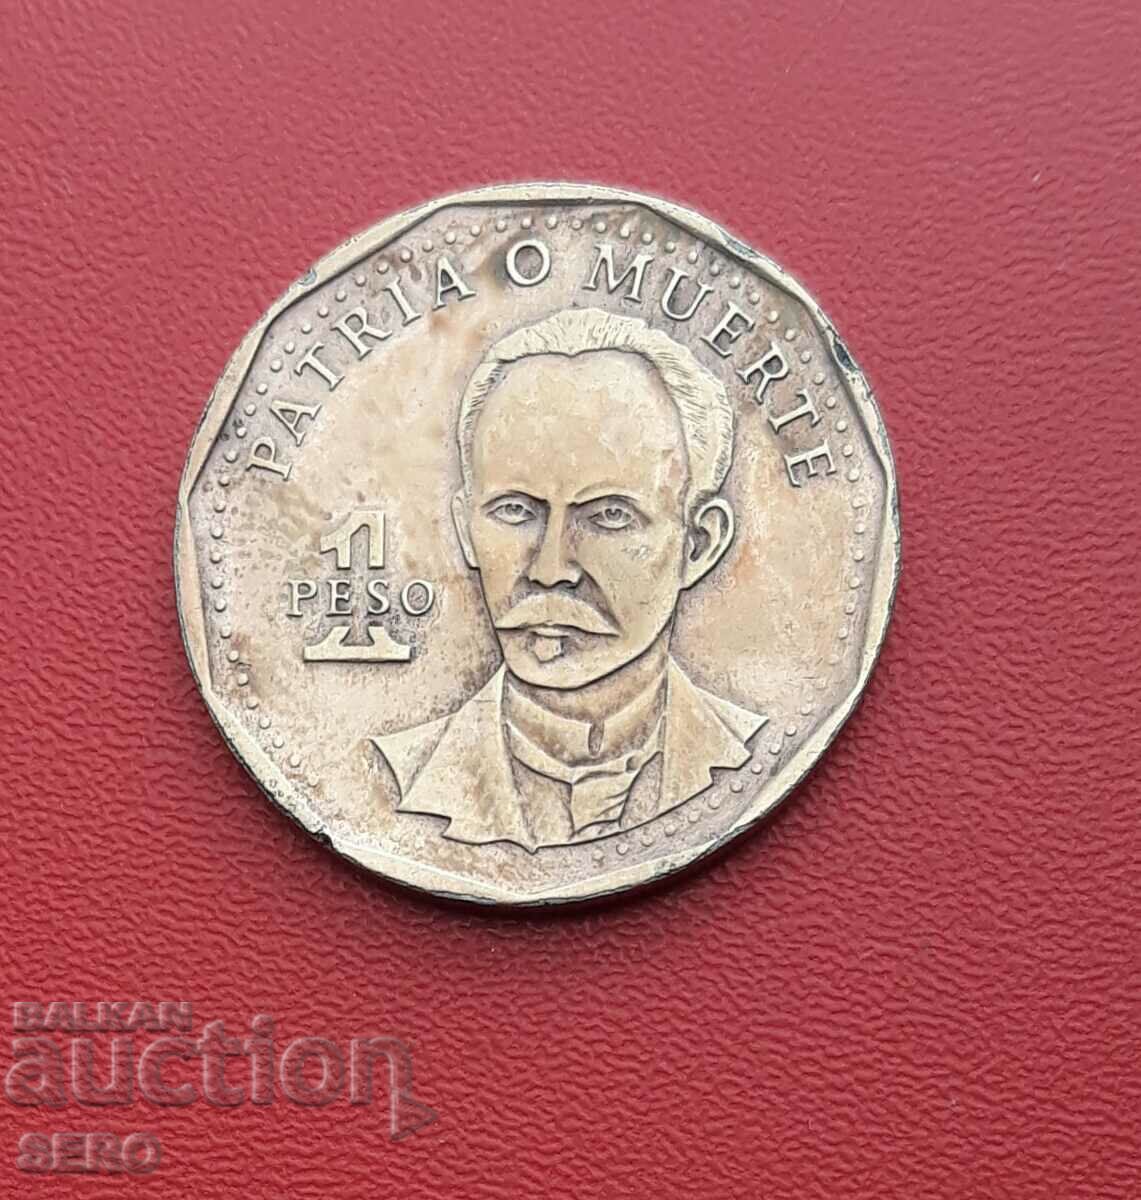 Cuba-1 peso 1992